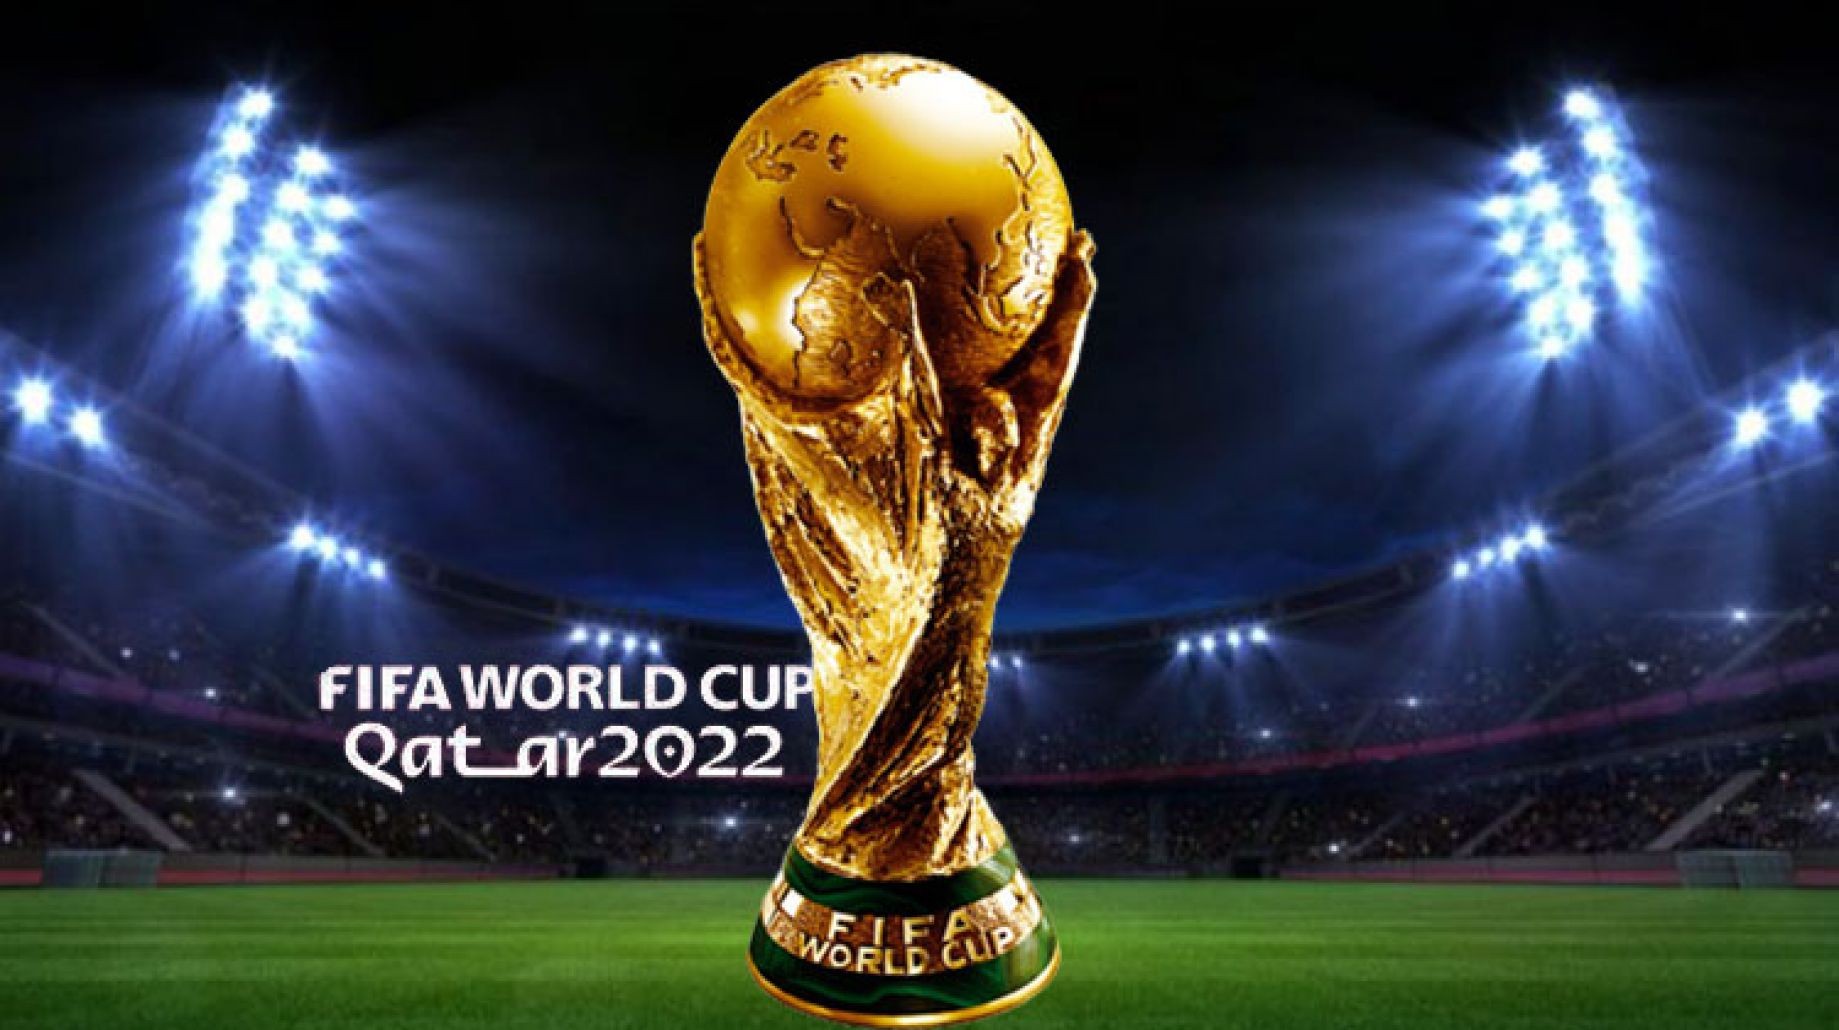 متى افتتاح كاس العالم 2022 في دولة قطر والساعه كم - الأمل نيوز